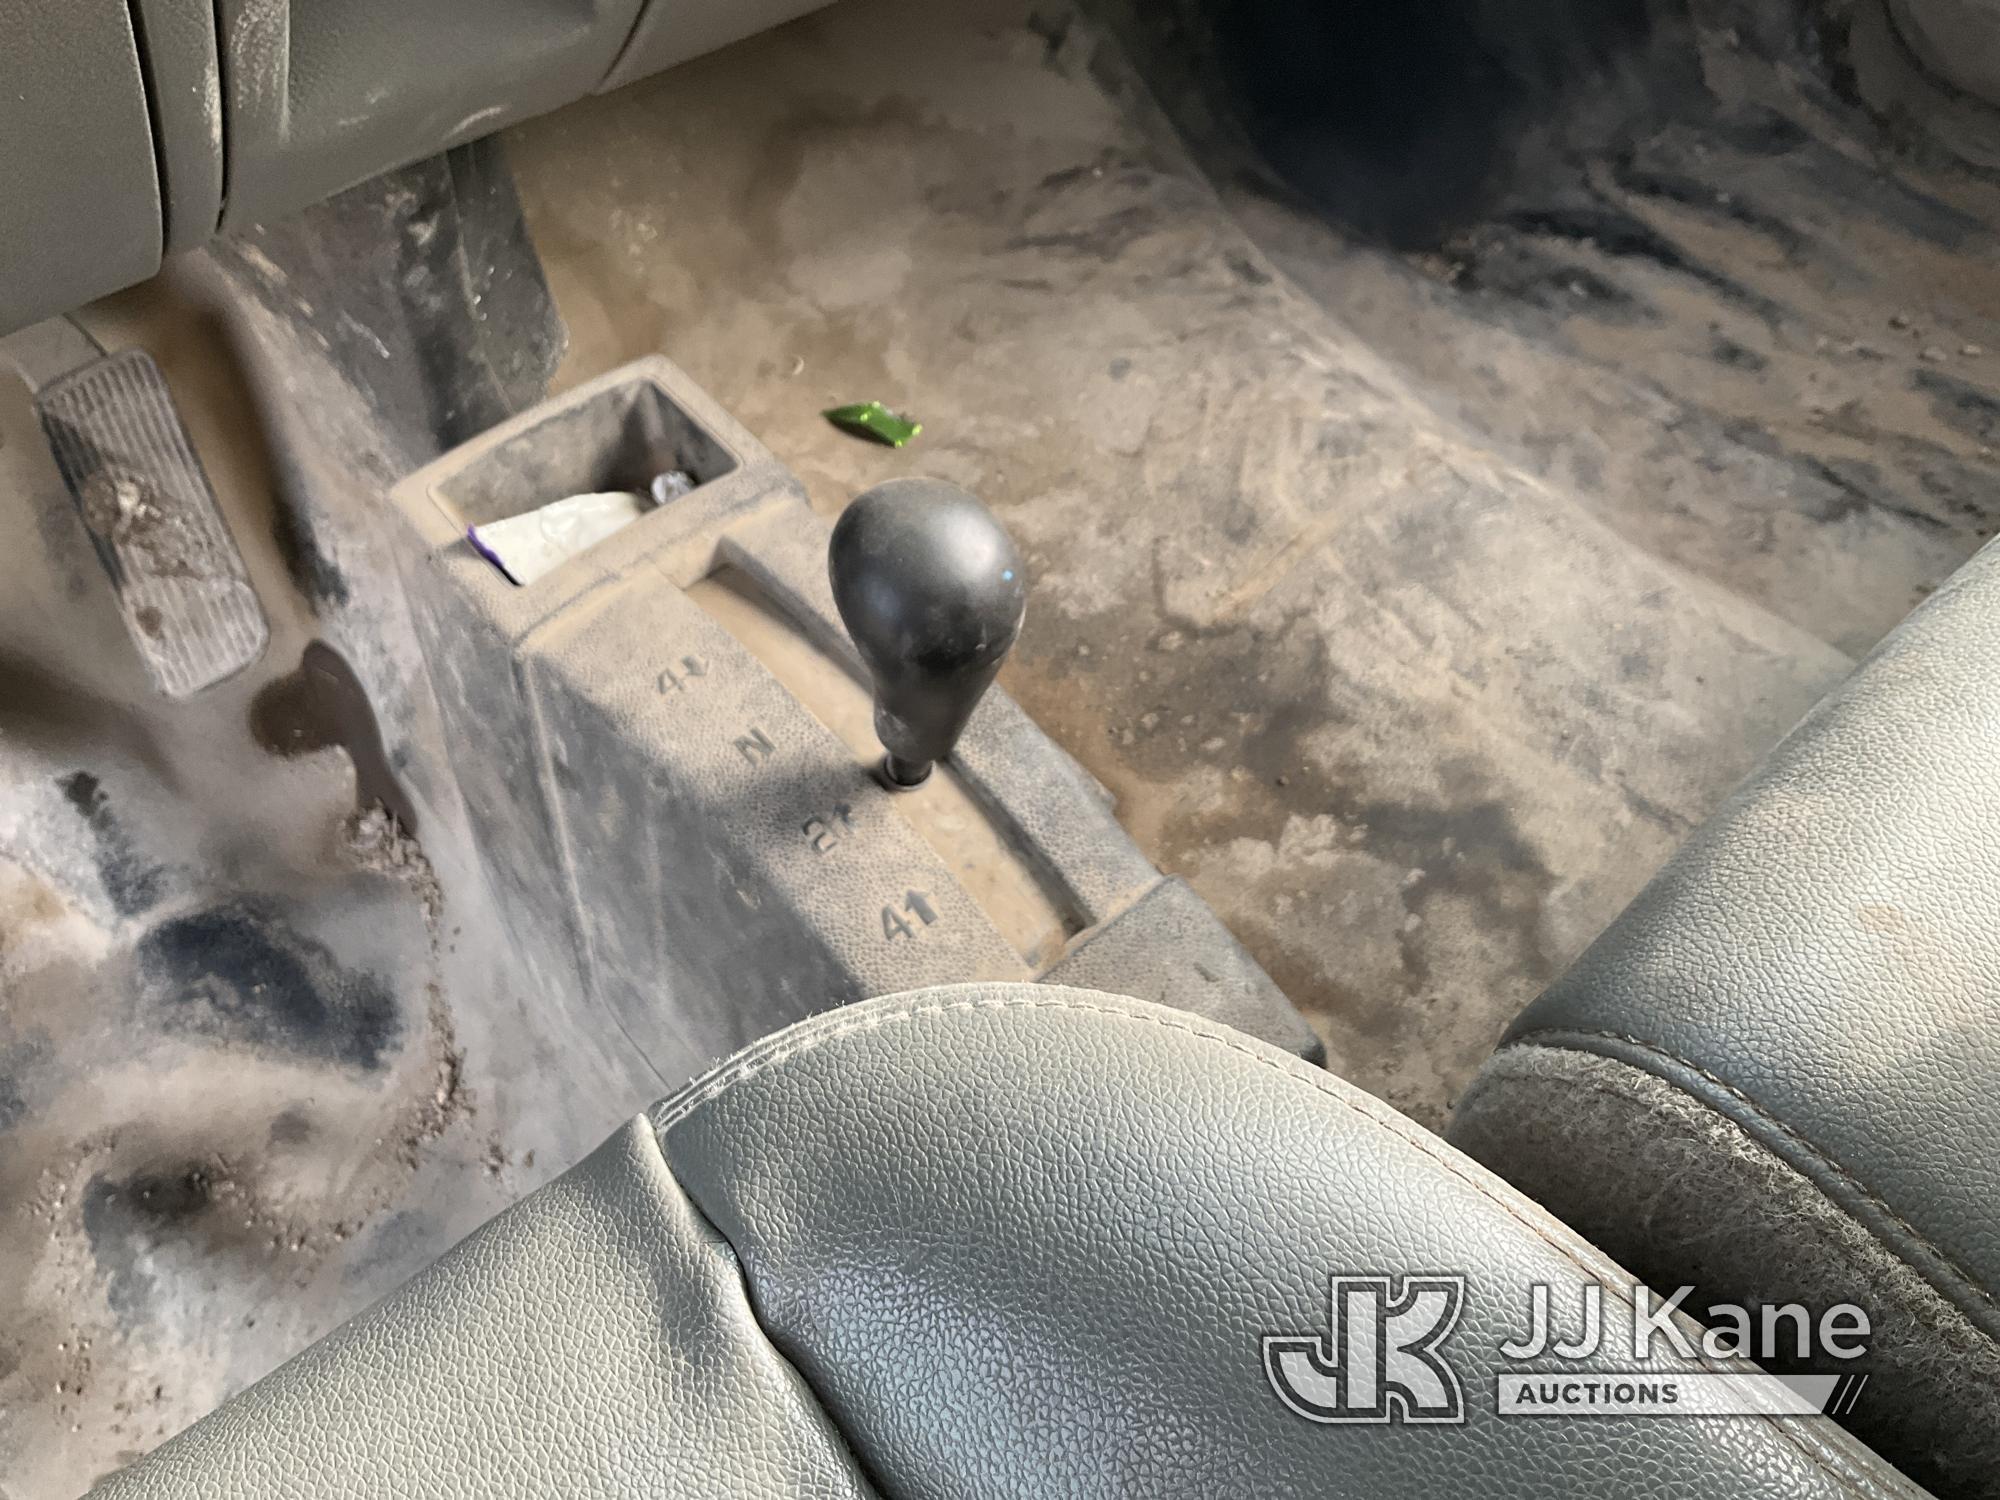 (San Antonio, TX) 2013 Chevrolet Silverado 3500HD 4x4 Crew-Cab Flatbed Truck Runs & Moves) (Dead Bat